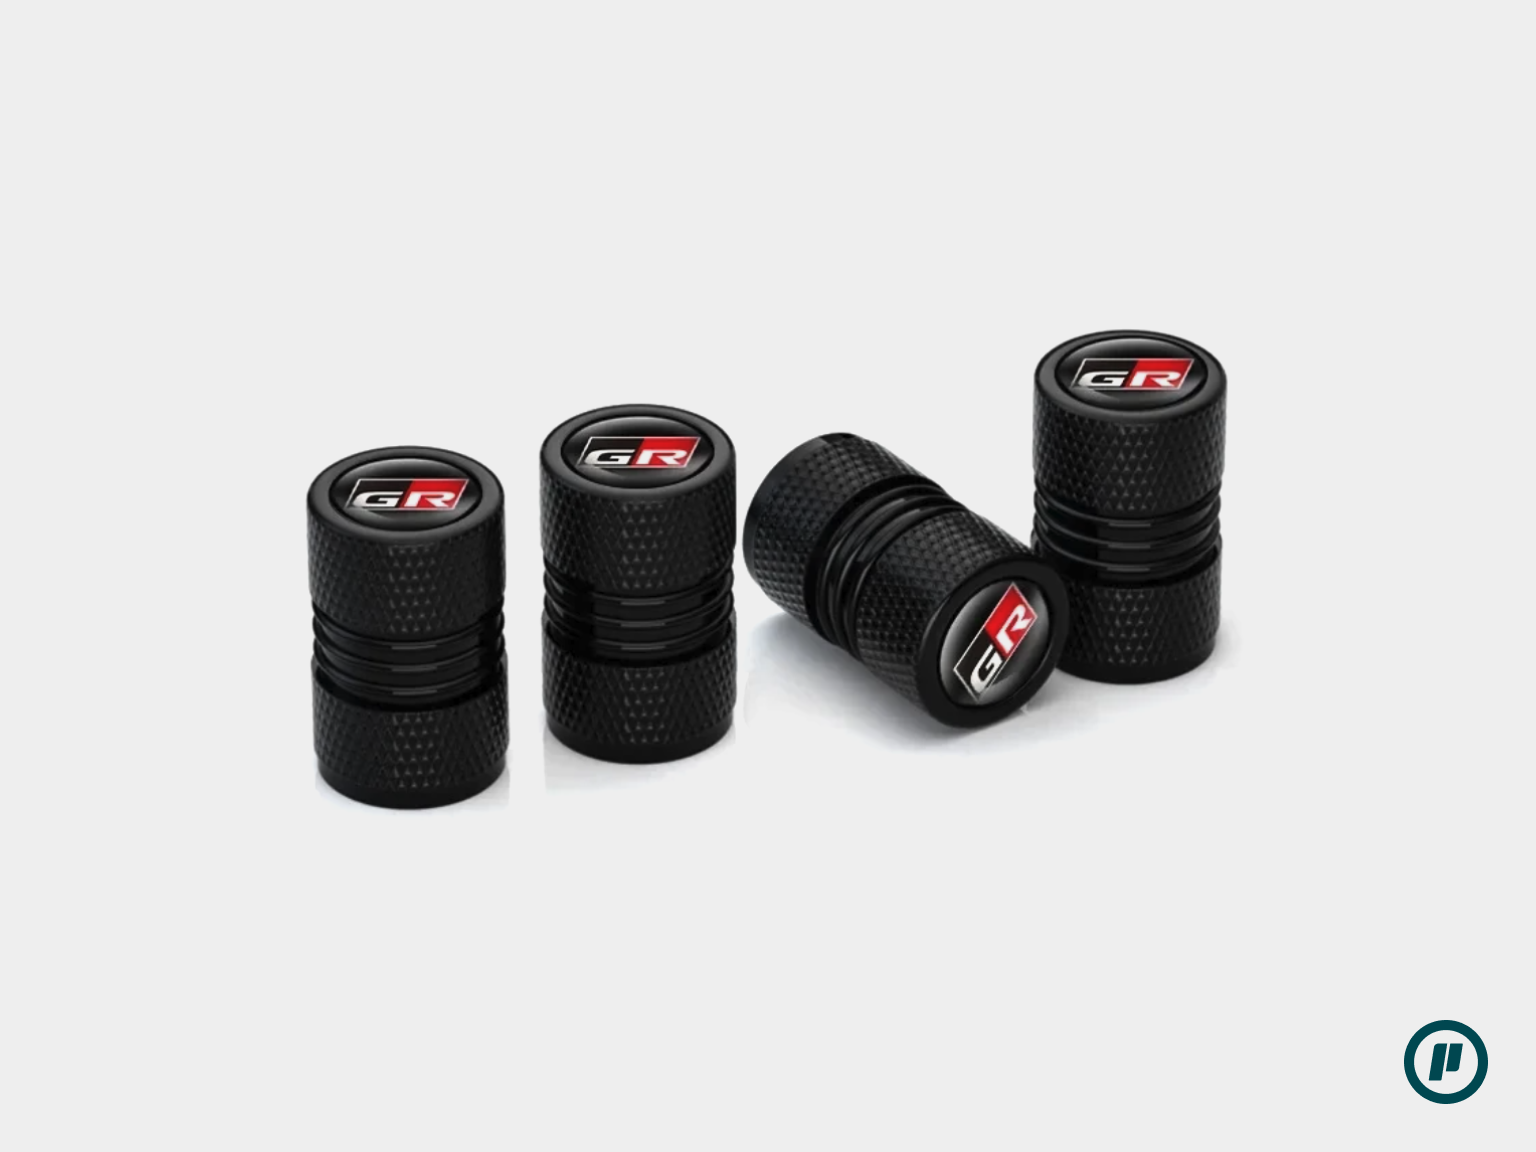 Wheel Tire Valve Stem Caps for Toyota GR Models (Set of 4 Caps)